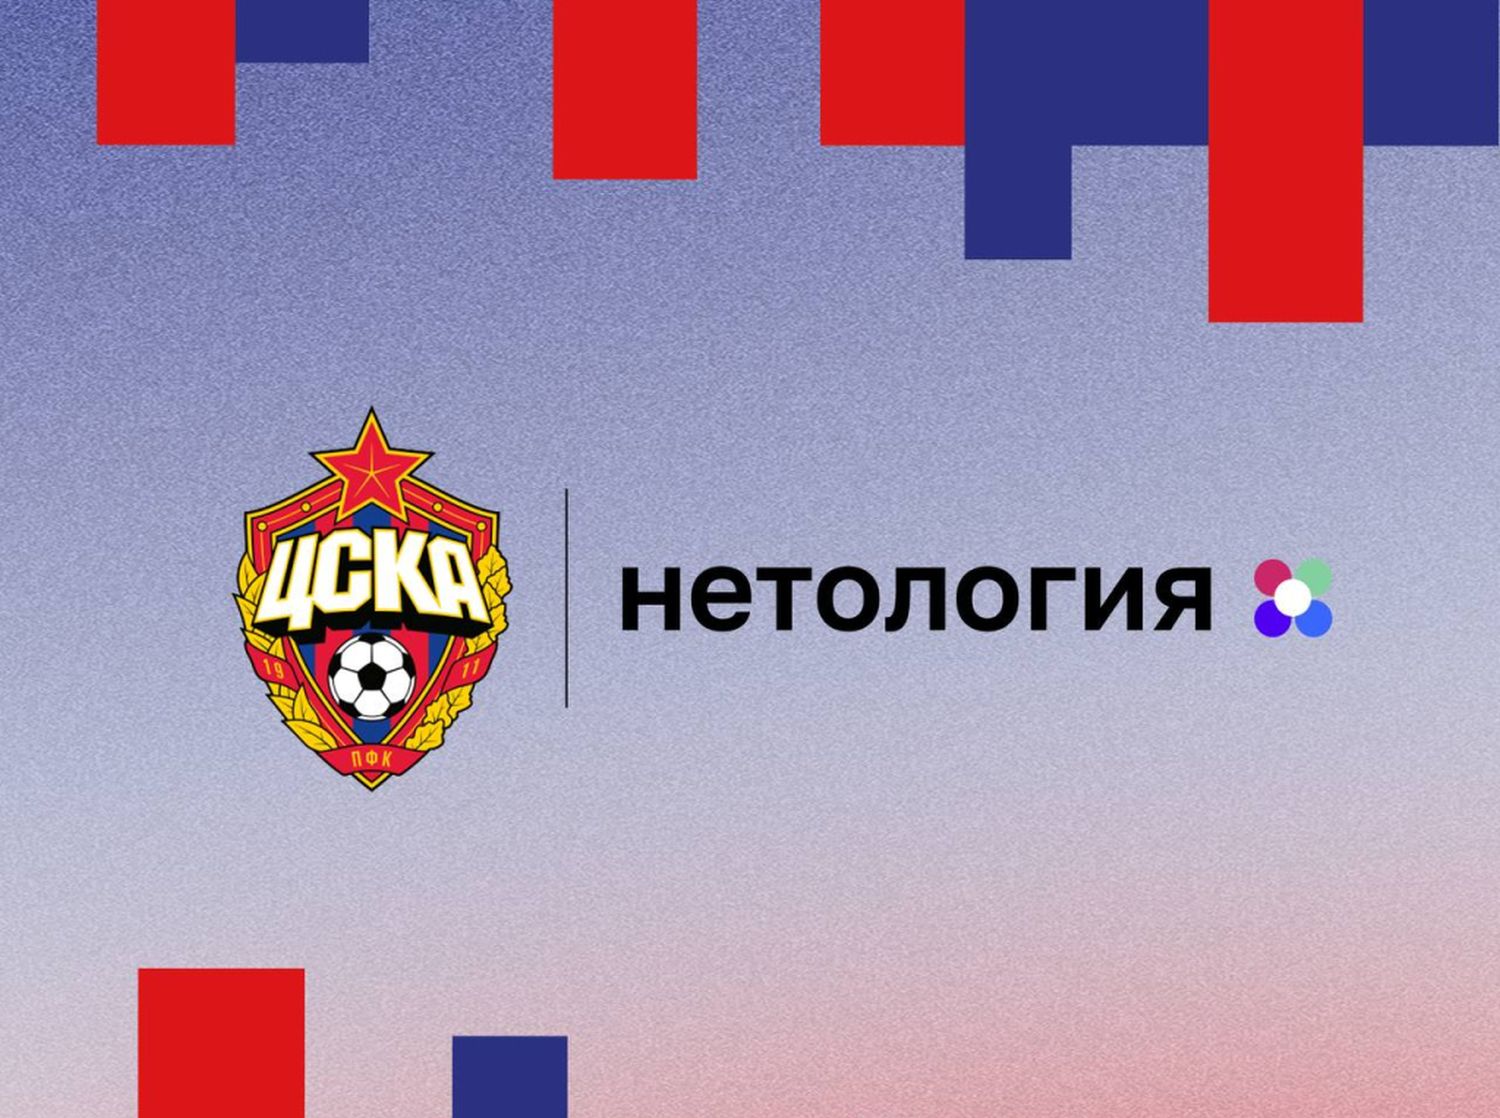 «Нетология» и ЦСКА запустили курс по спортивному менеджменту и маркетингу